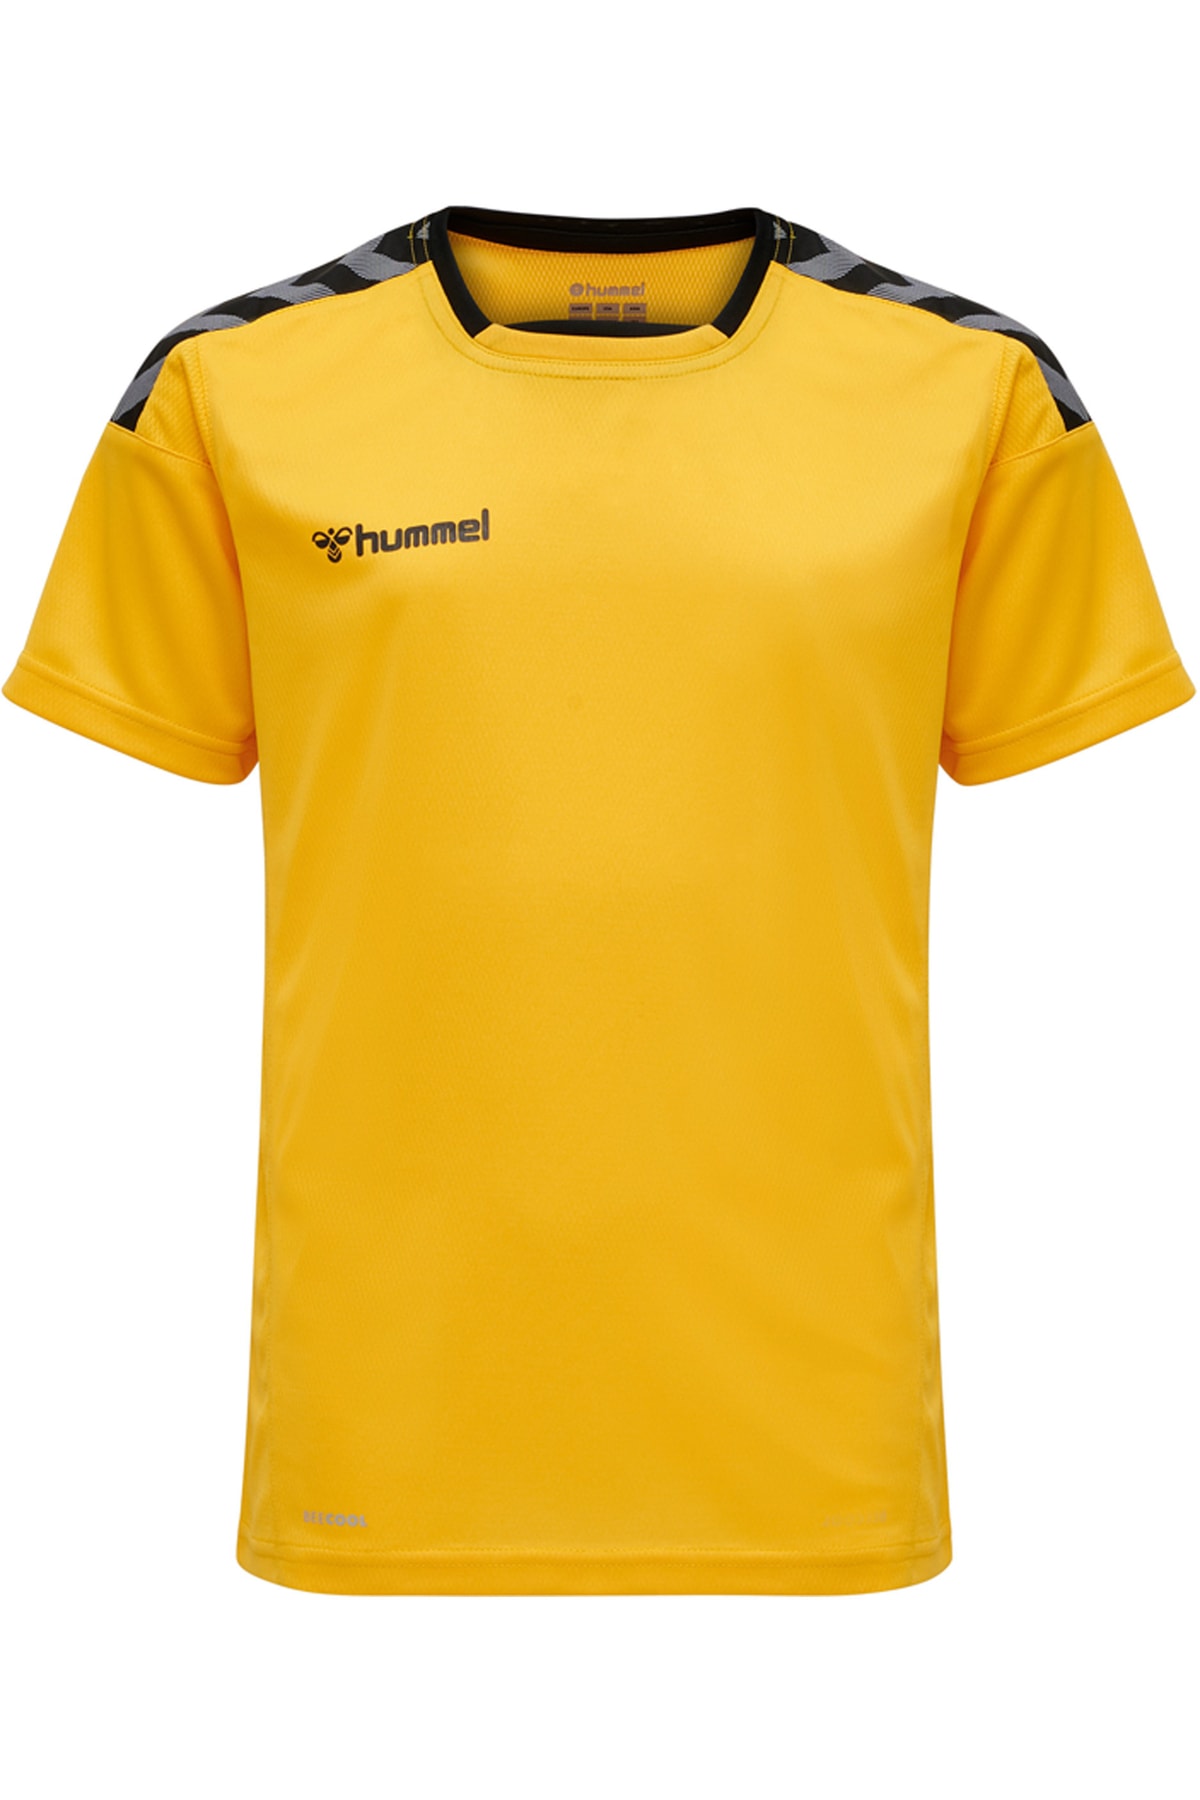 HUMMEL T-Shirt Gelb Regular Fit